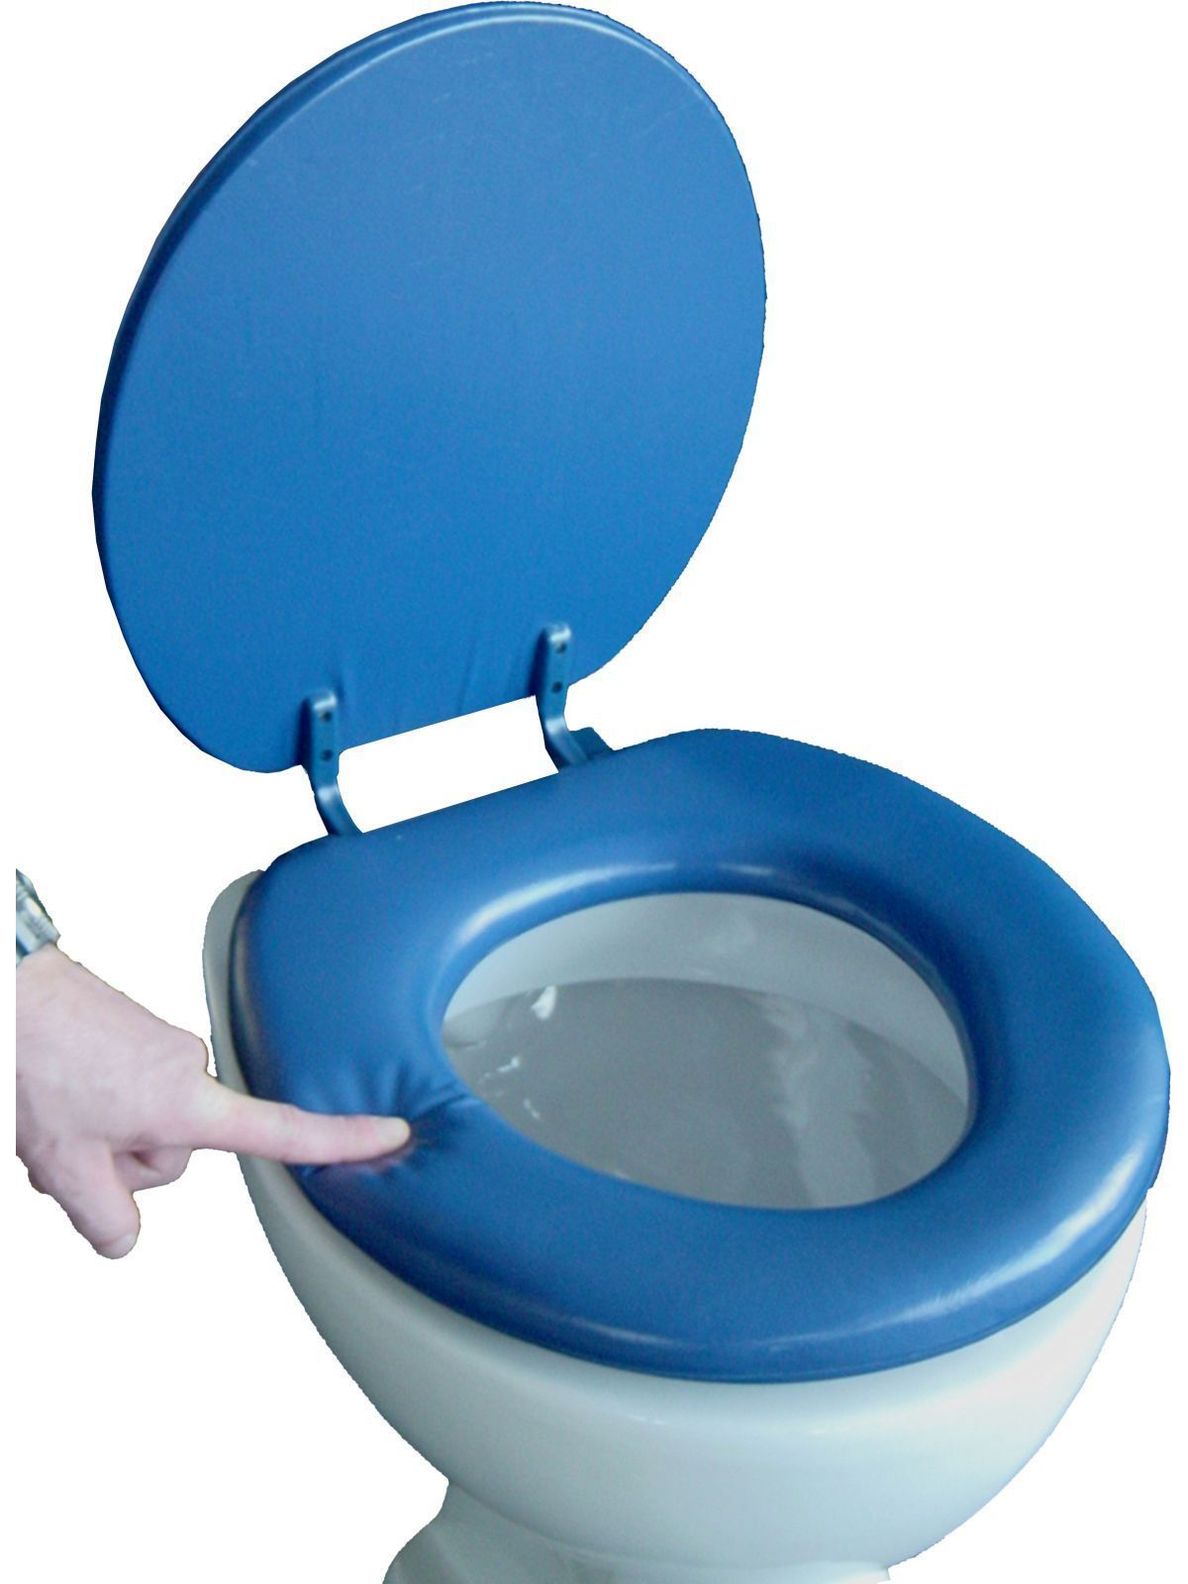 VCM Soft WC Sitz Toilettendeckel Deckel Brille Toilettensitz Klobrille  Lugano - Gepolsterte Sitzfläche bis 150 kg VCM WC-Sitz Deckel Farbe:  dunkelblau | Weltbild.de